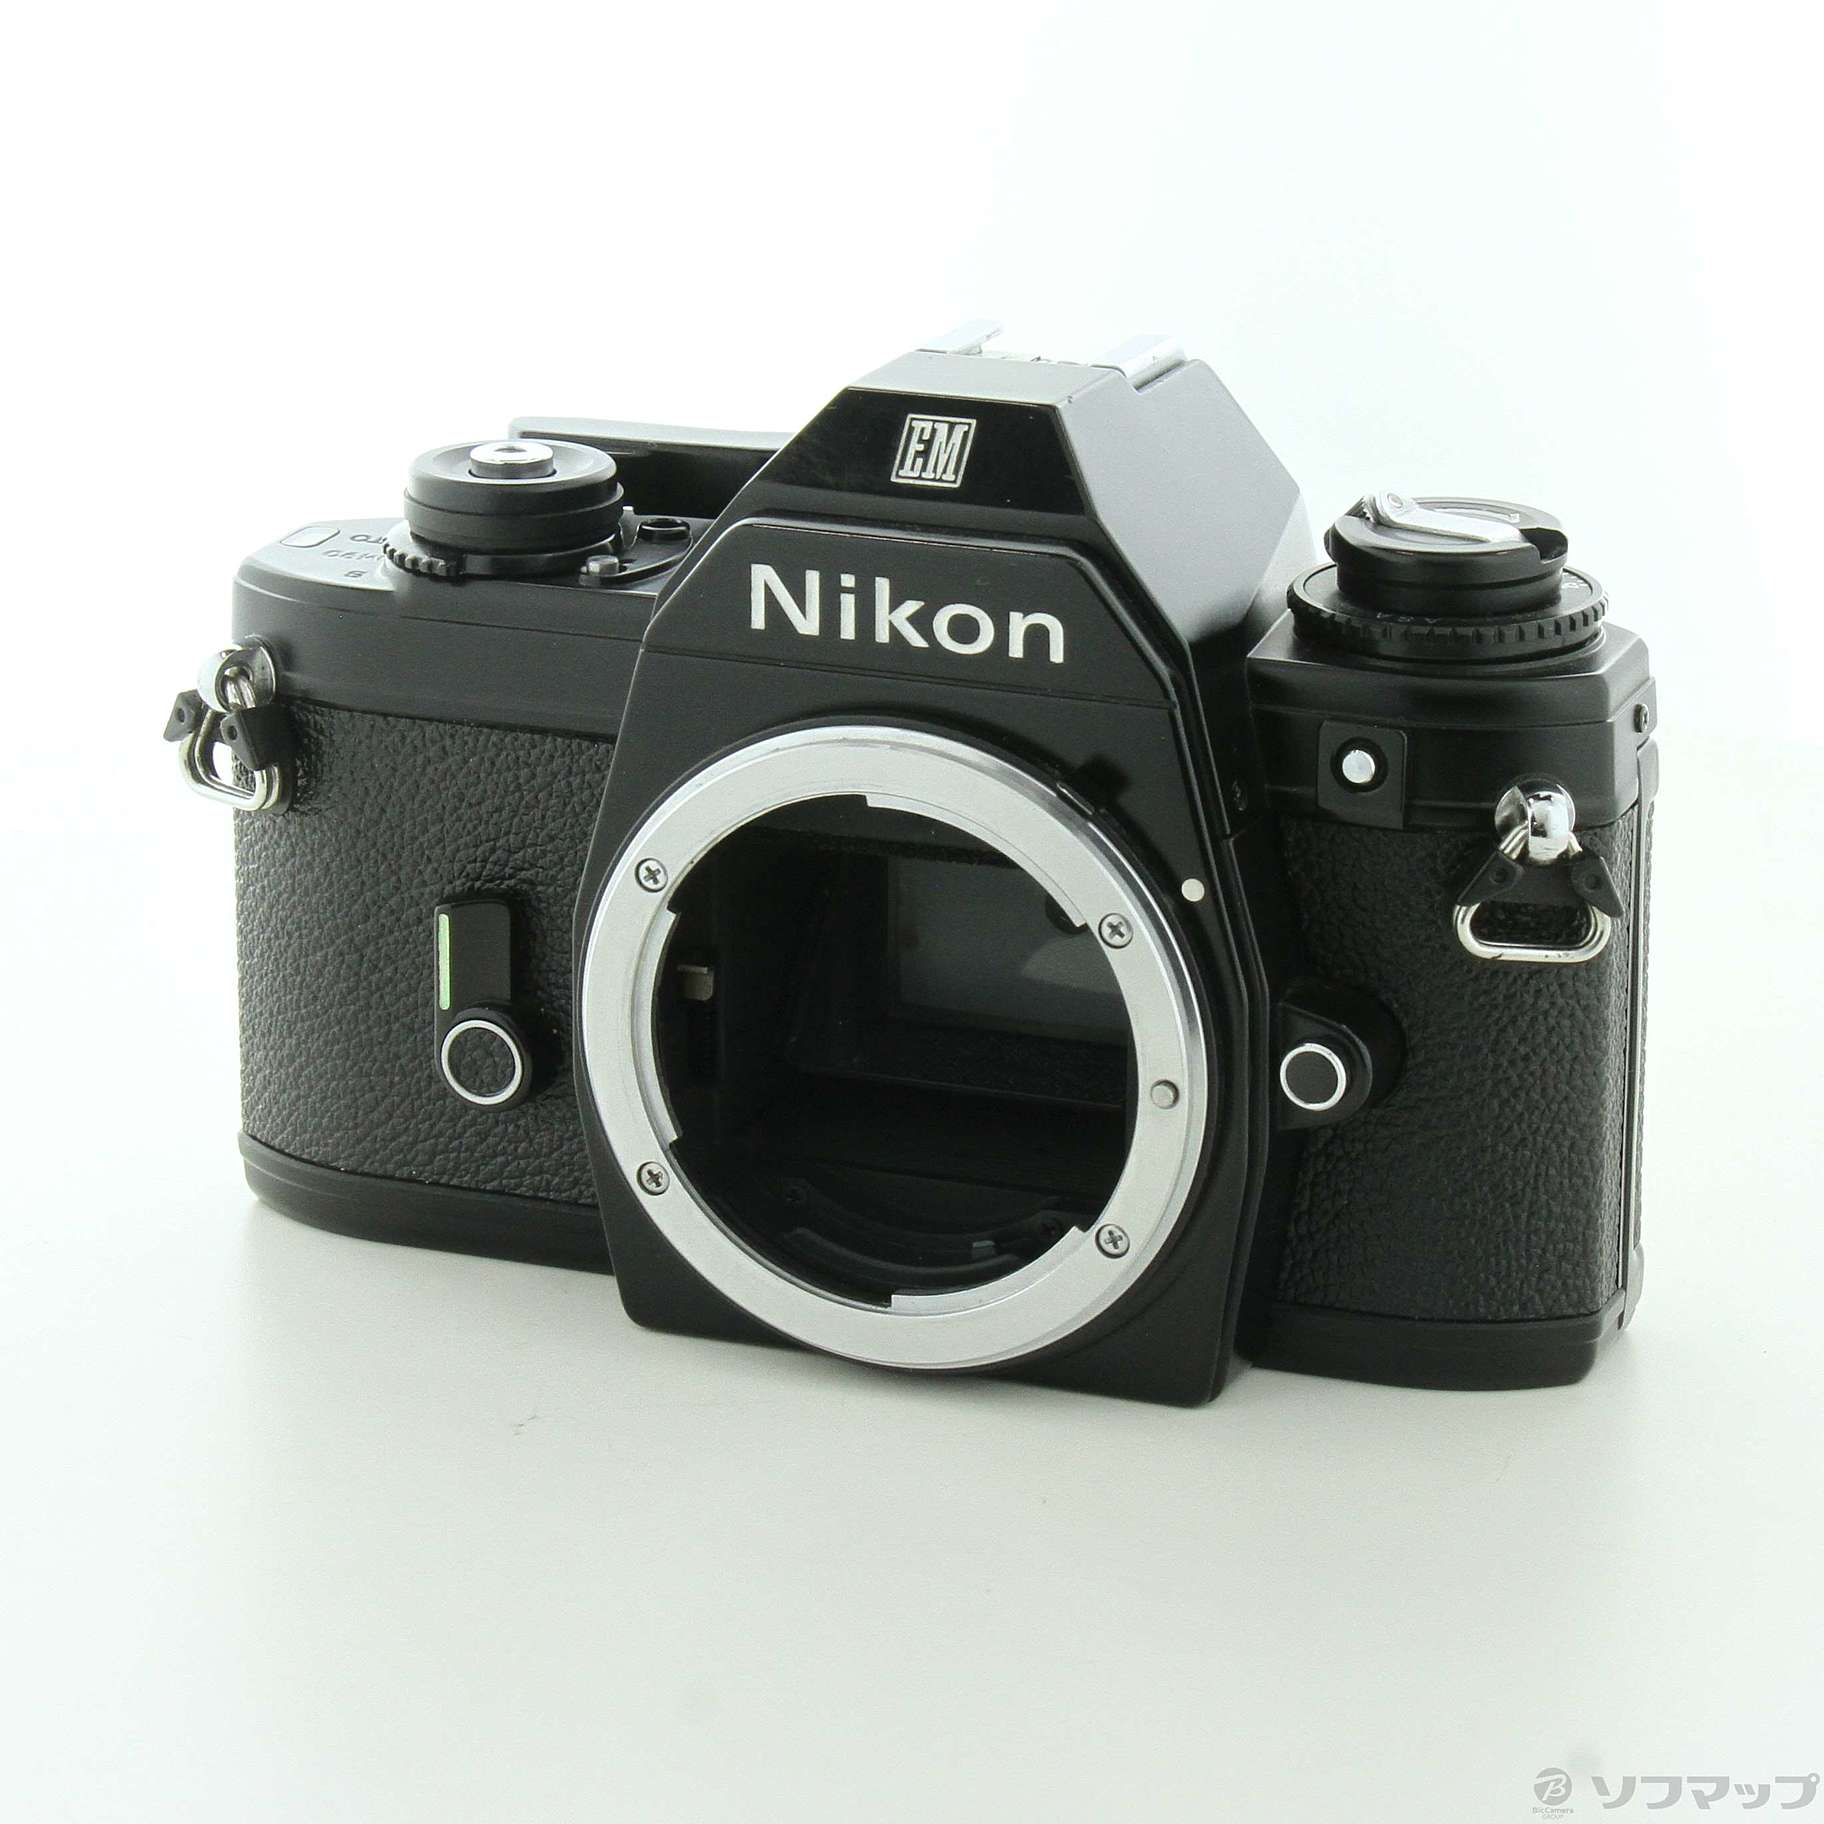 Nikon EM ボディ フィルム一眼レフカメラ Fマウント